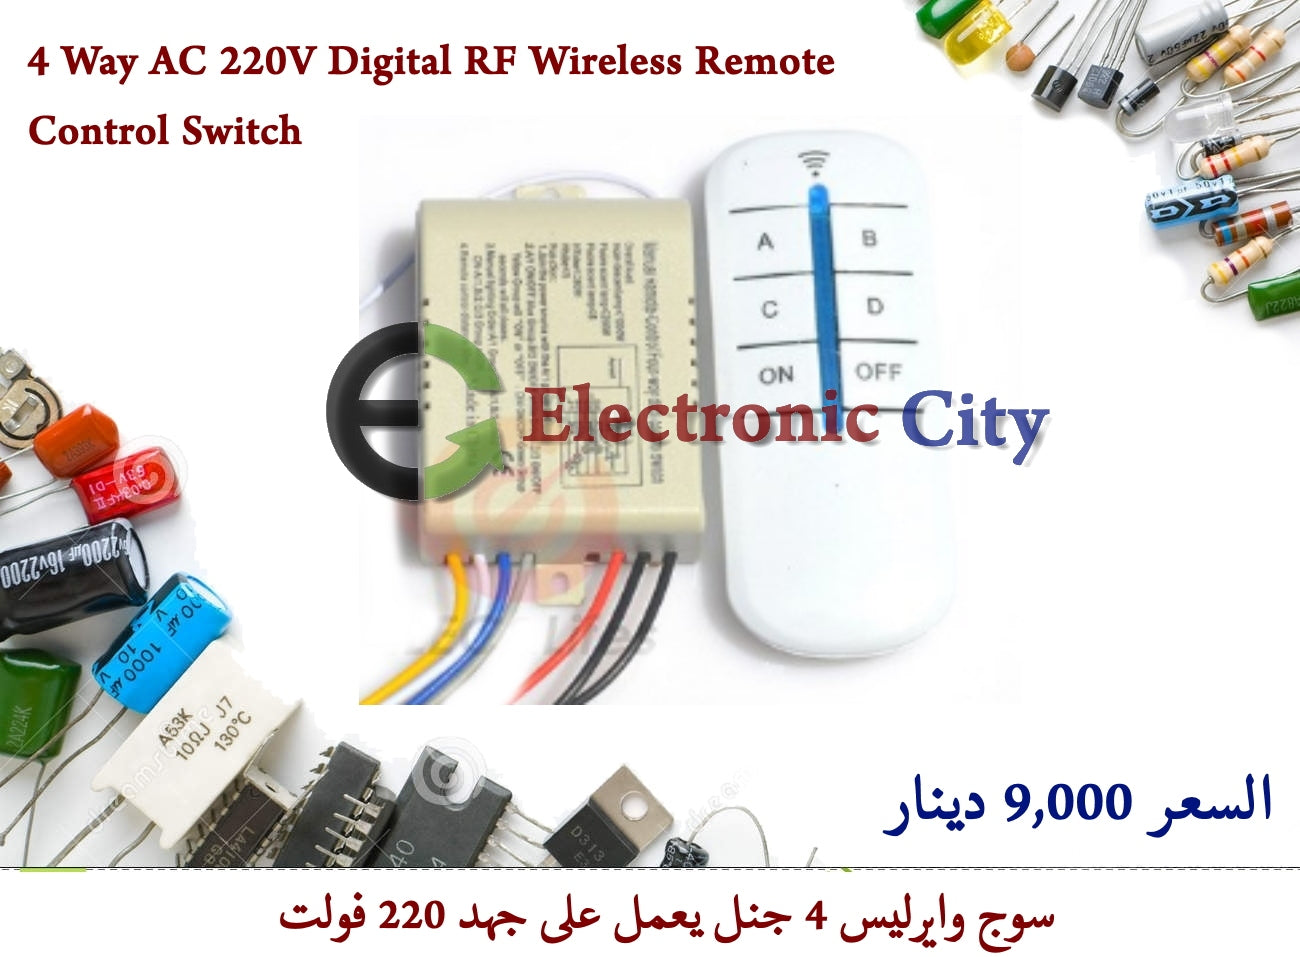 4 Way AC 220V Digital RF Wireless Remote Control Switch #M8 XU0064